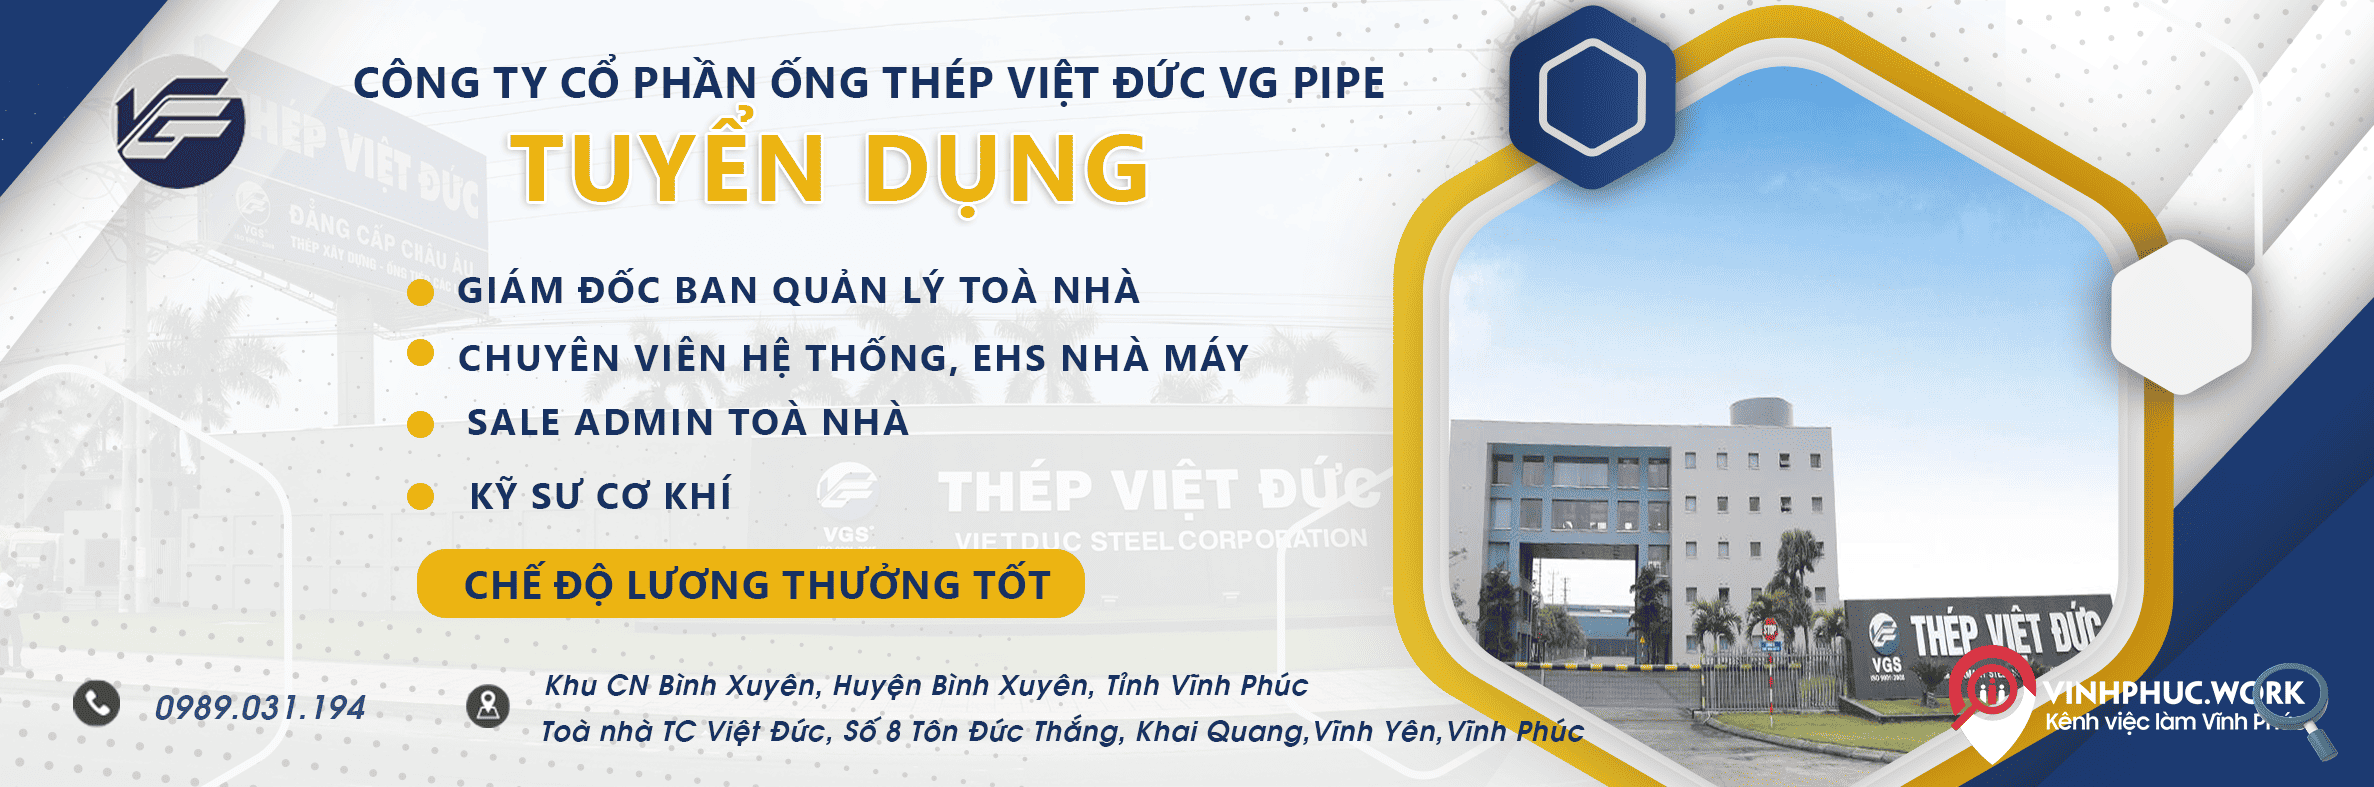 Tap Doan San Xuat Thep Viet Duc Thong Bao Tuyen Dung Nhieu Vi Tri 4